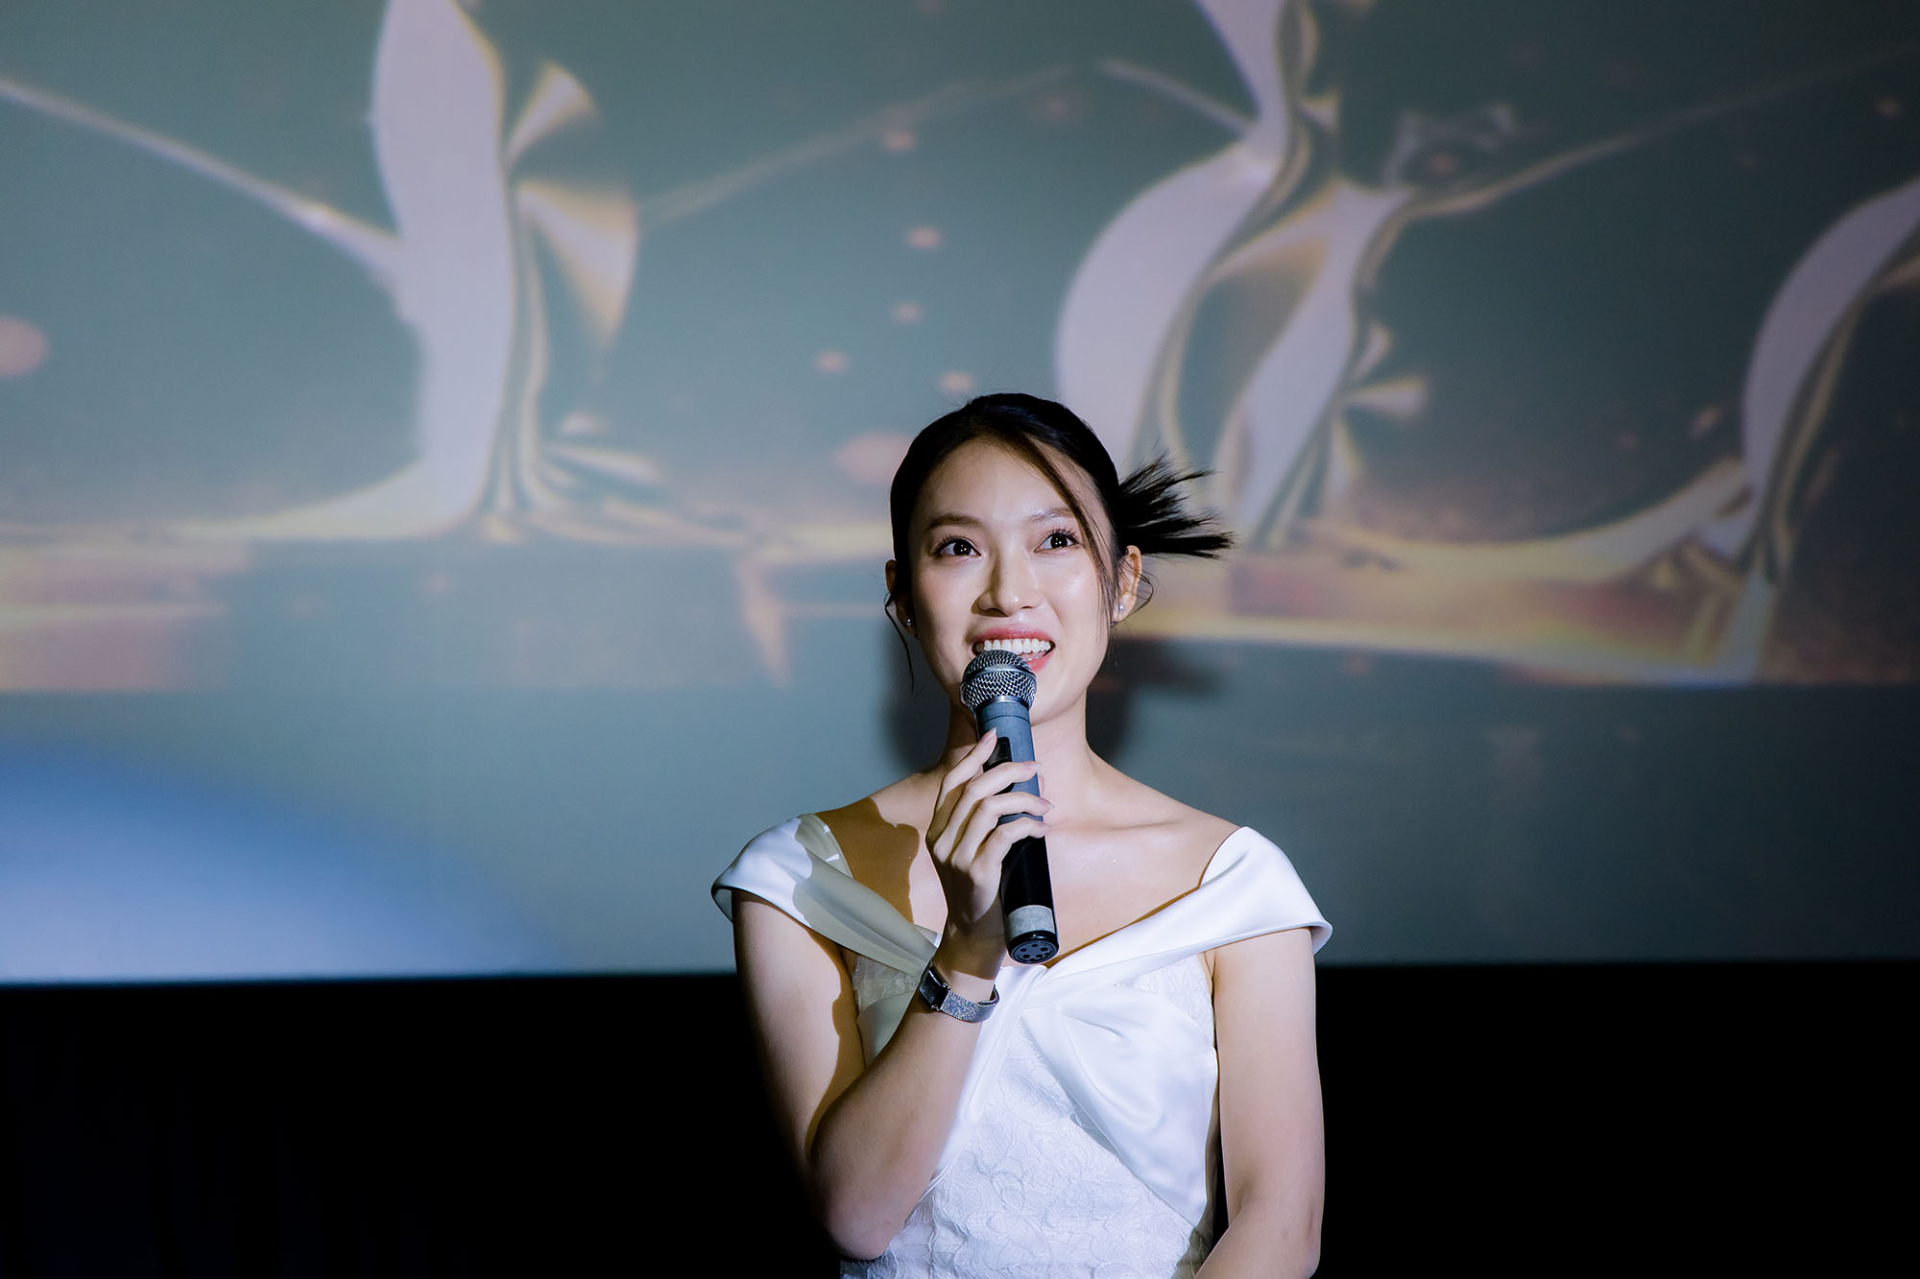 Siêu mẫu Vũ Thu Phương: “Đại diện Việt Nam tại Miss Global 2023 không chỉ cần nhan sắc và trí tuệ” - ảnh 1